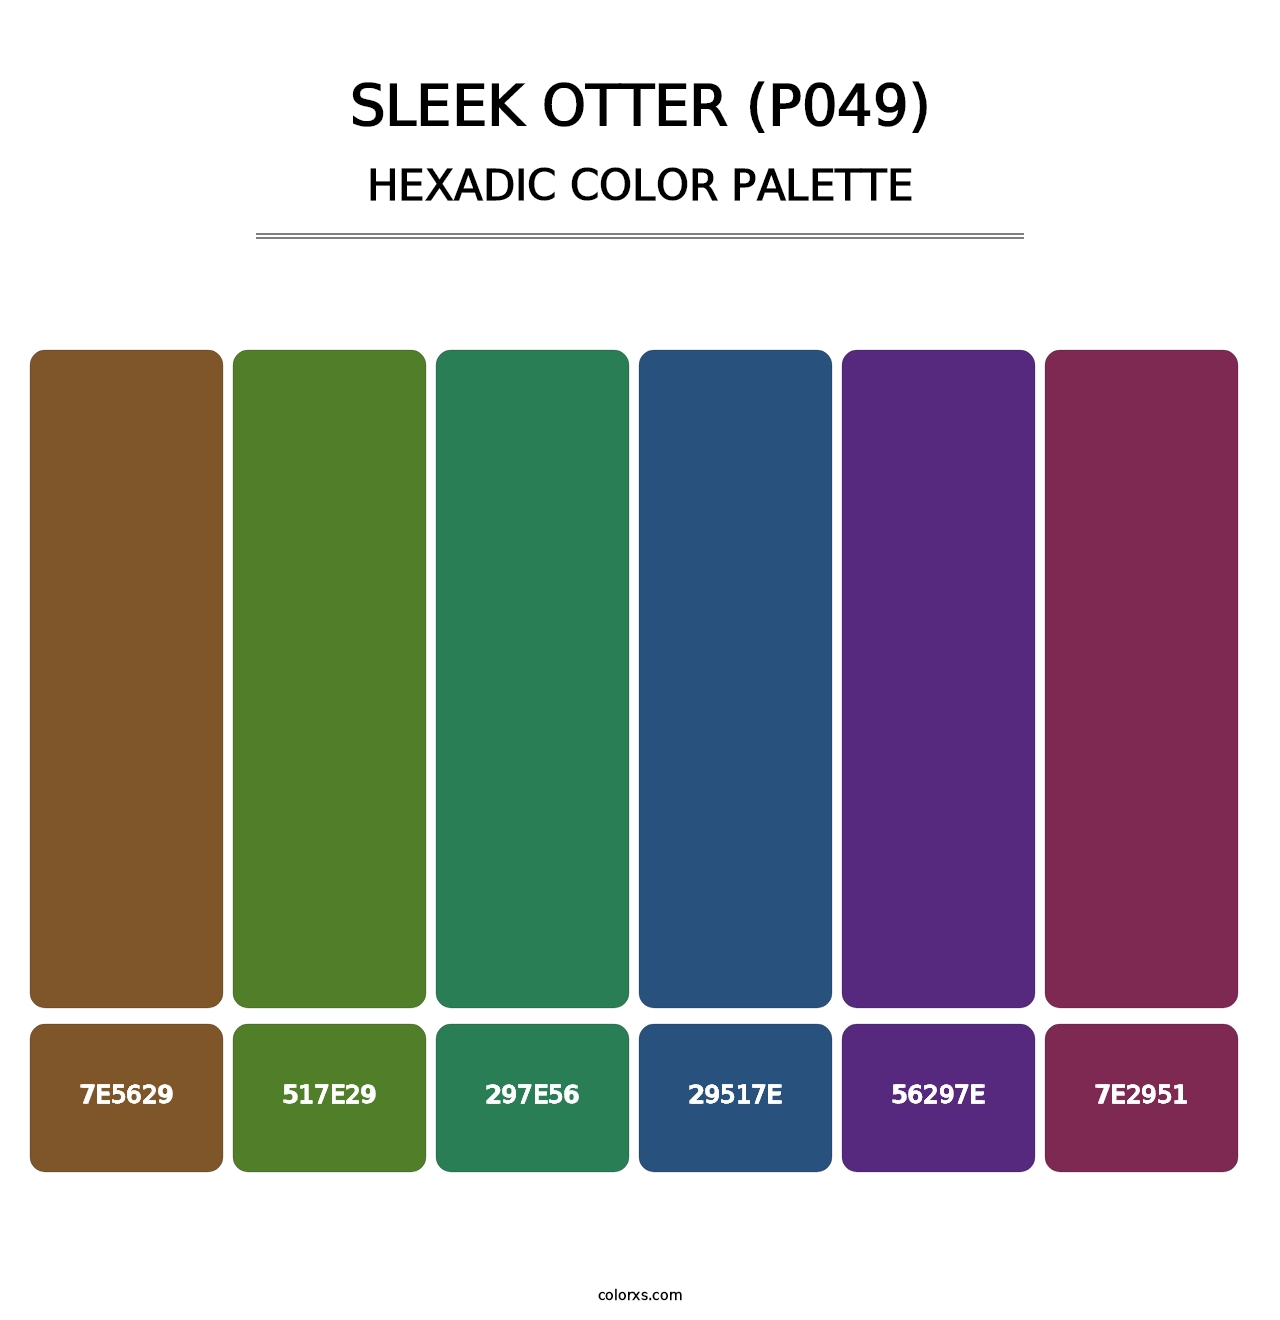 Sleek Otter (P049) - Hexadic Color Palette